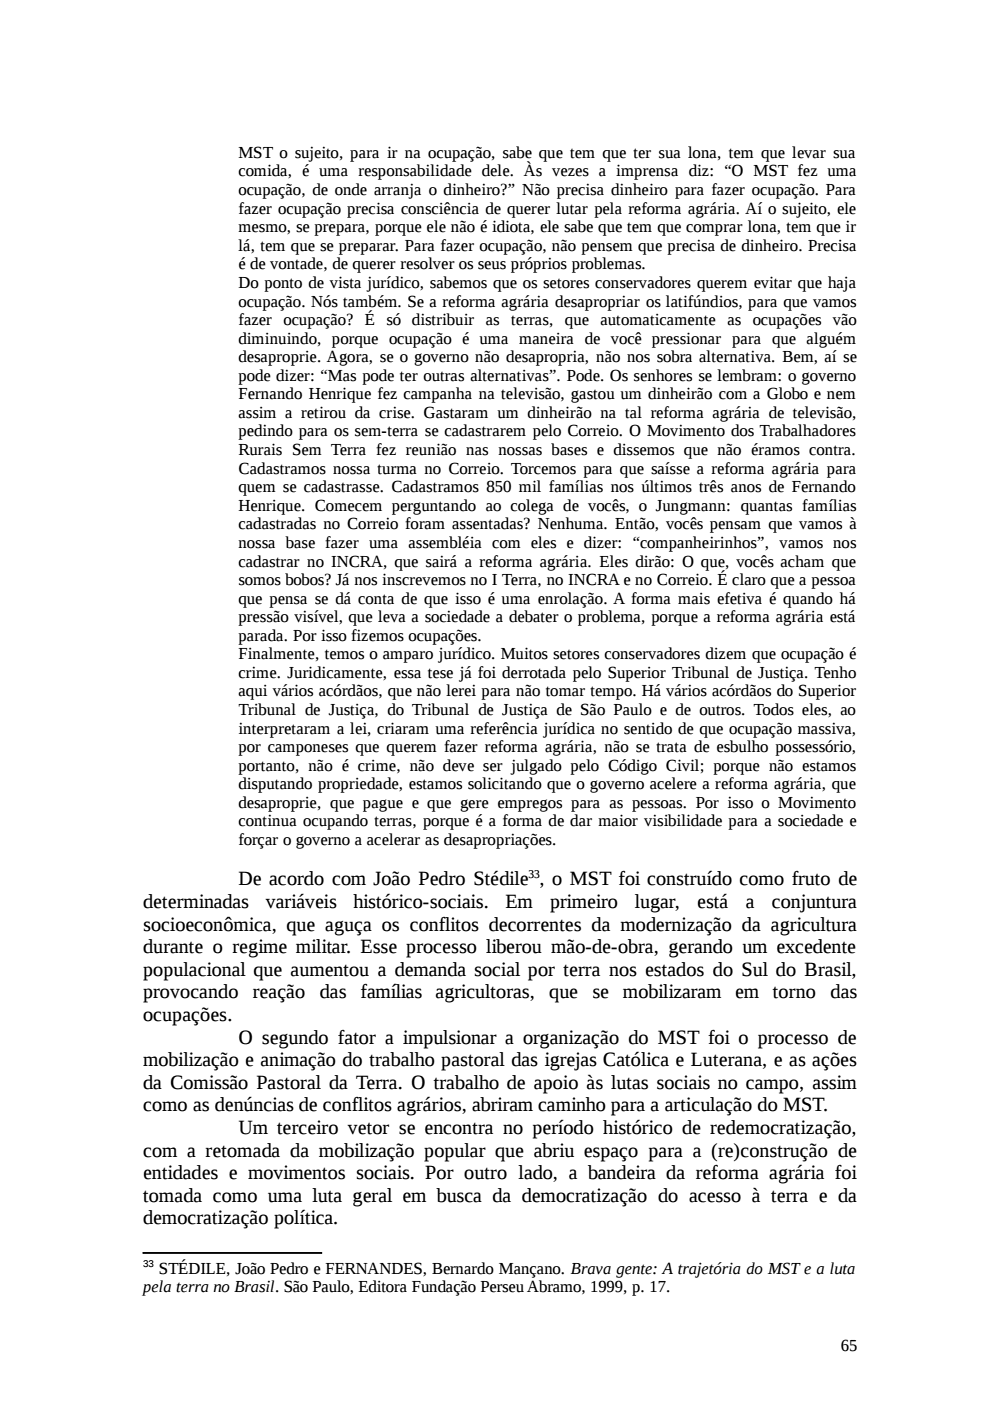 Page 65 from Relatório final da comissão